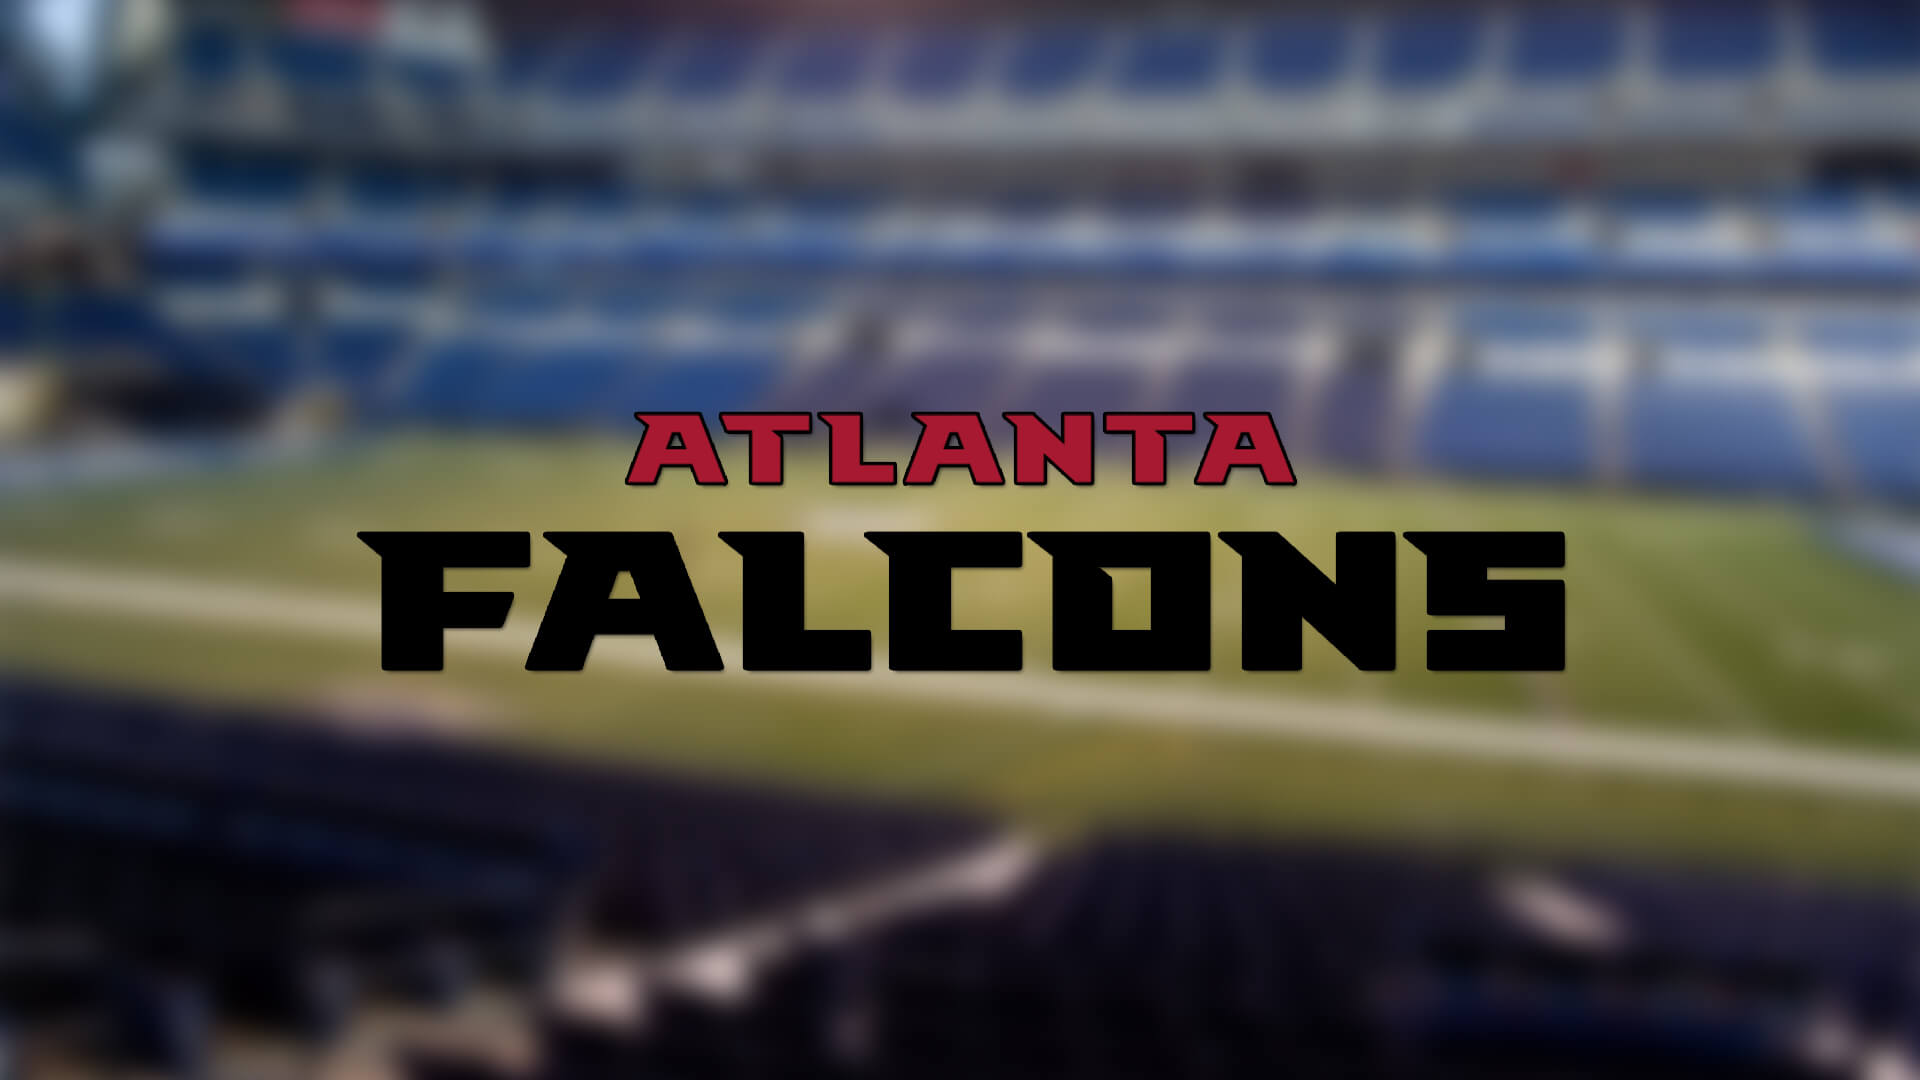 Atlanta Falcons, AJ Terrell ile Anlaşma İmzalıyor | Korumalı Futbol Türkiye